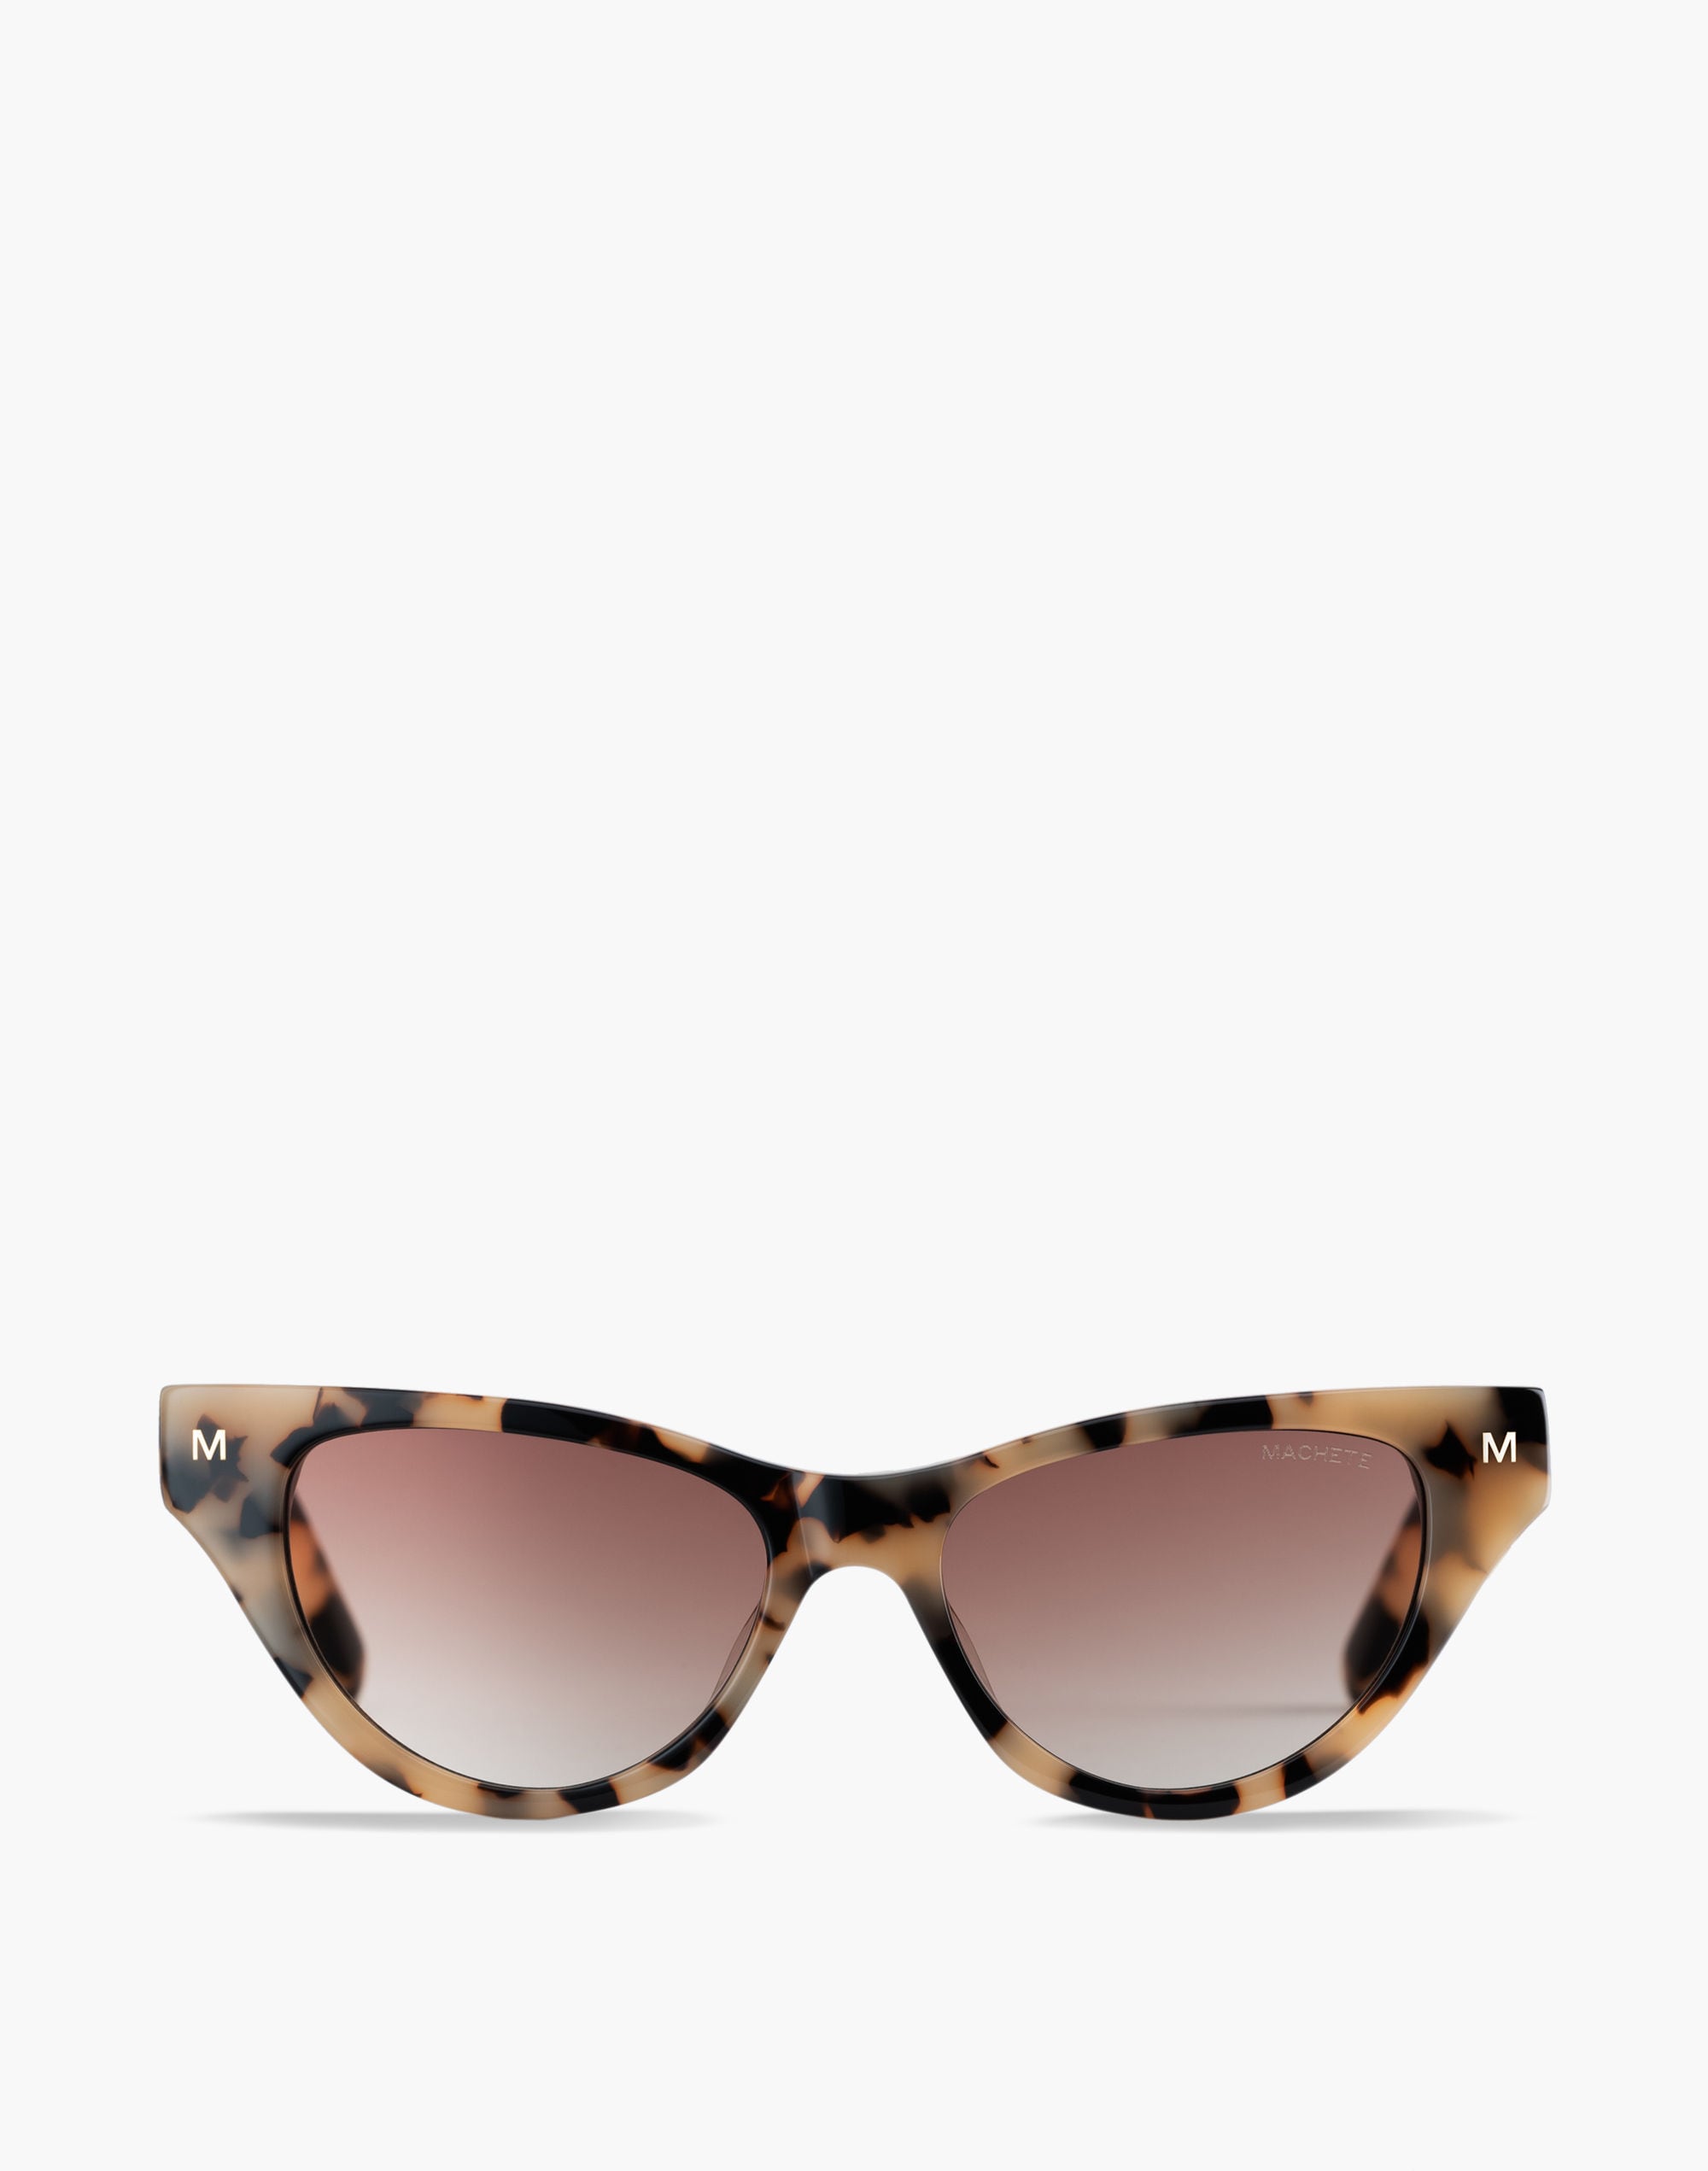 Mw Machete Suzy Sunglasses In Light Brown